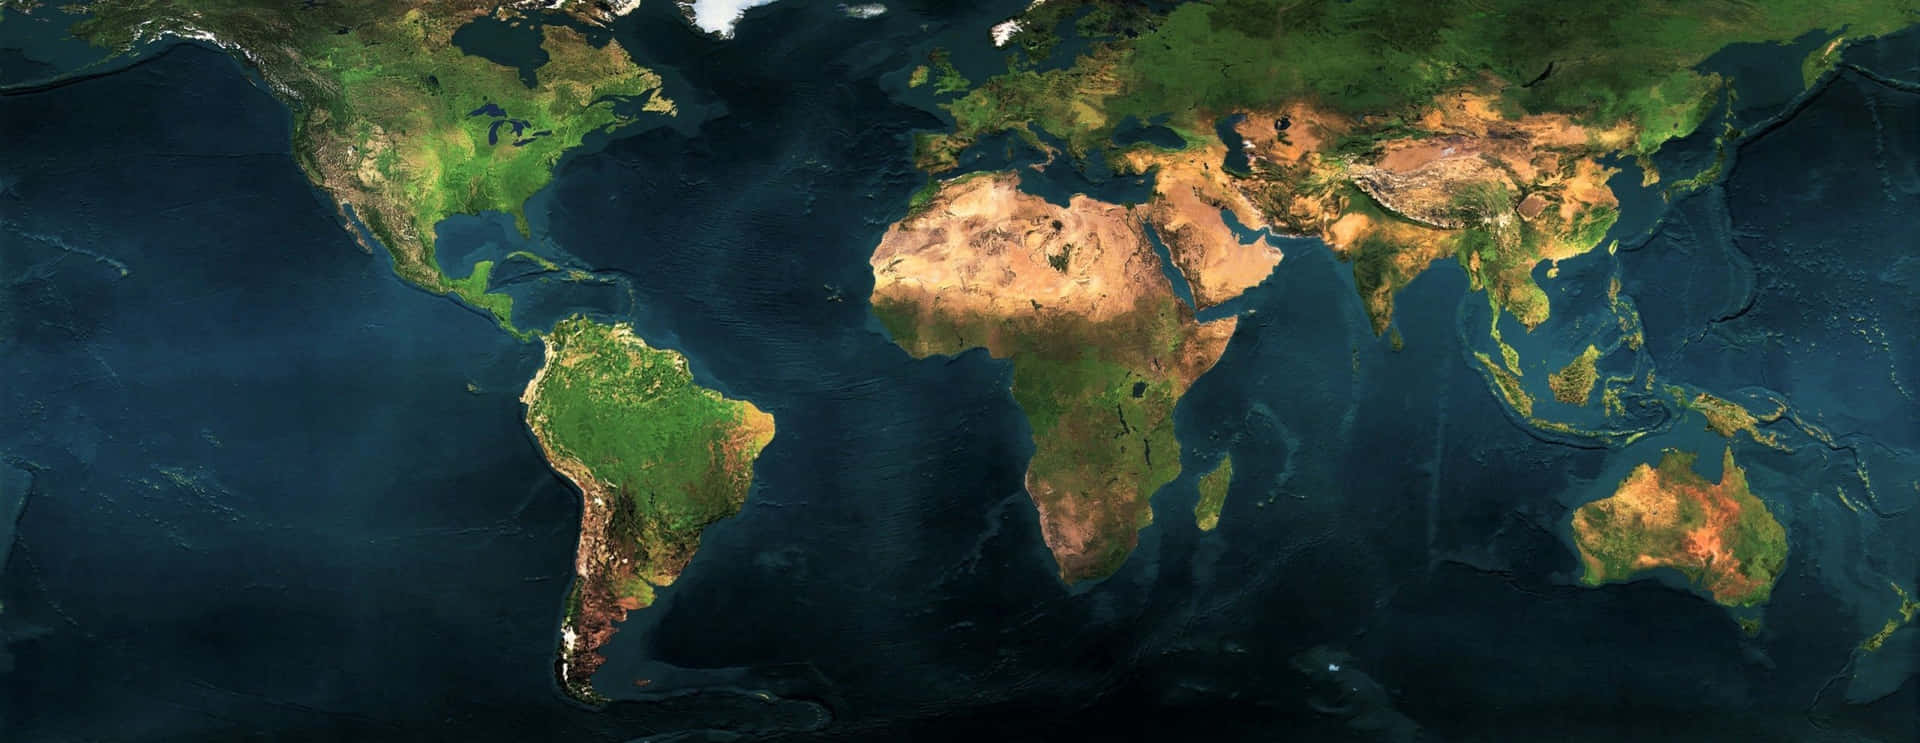 Einsatellitenbild Von Der Welt